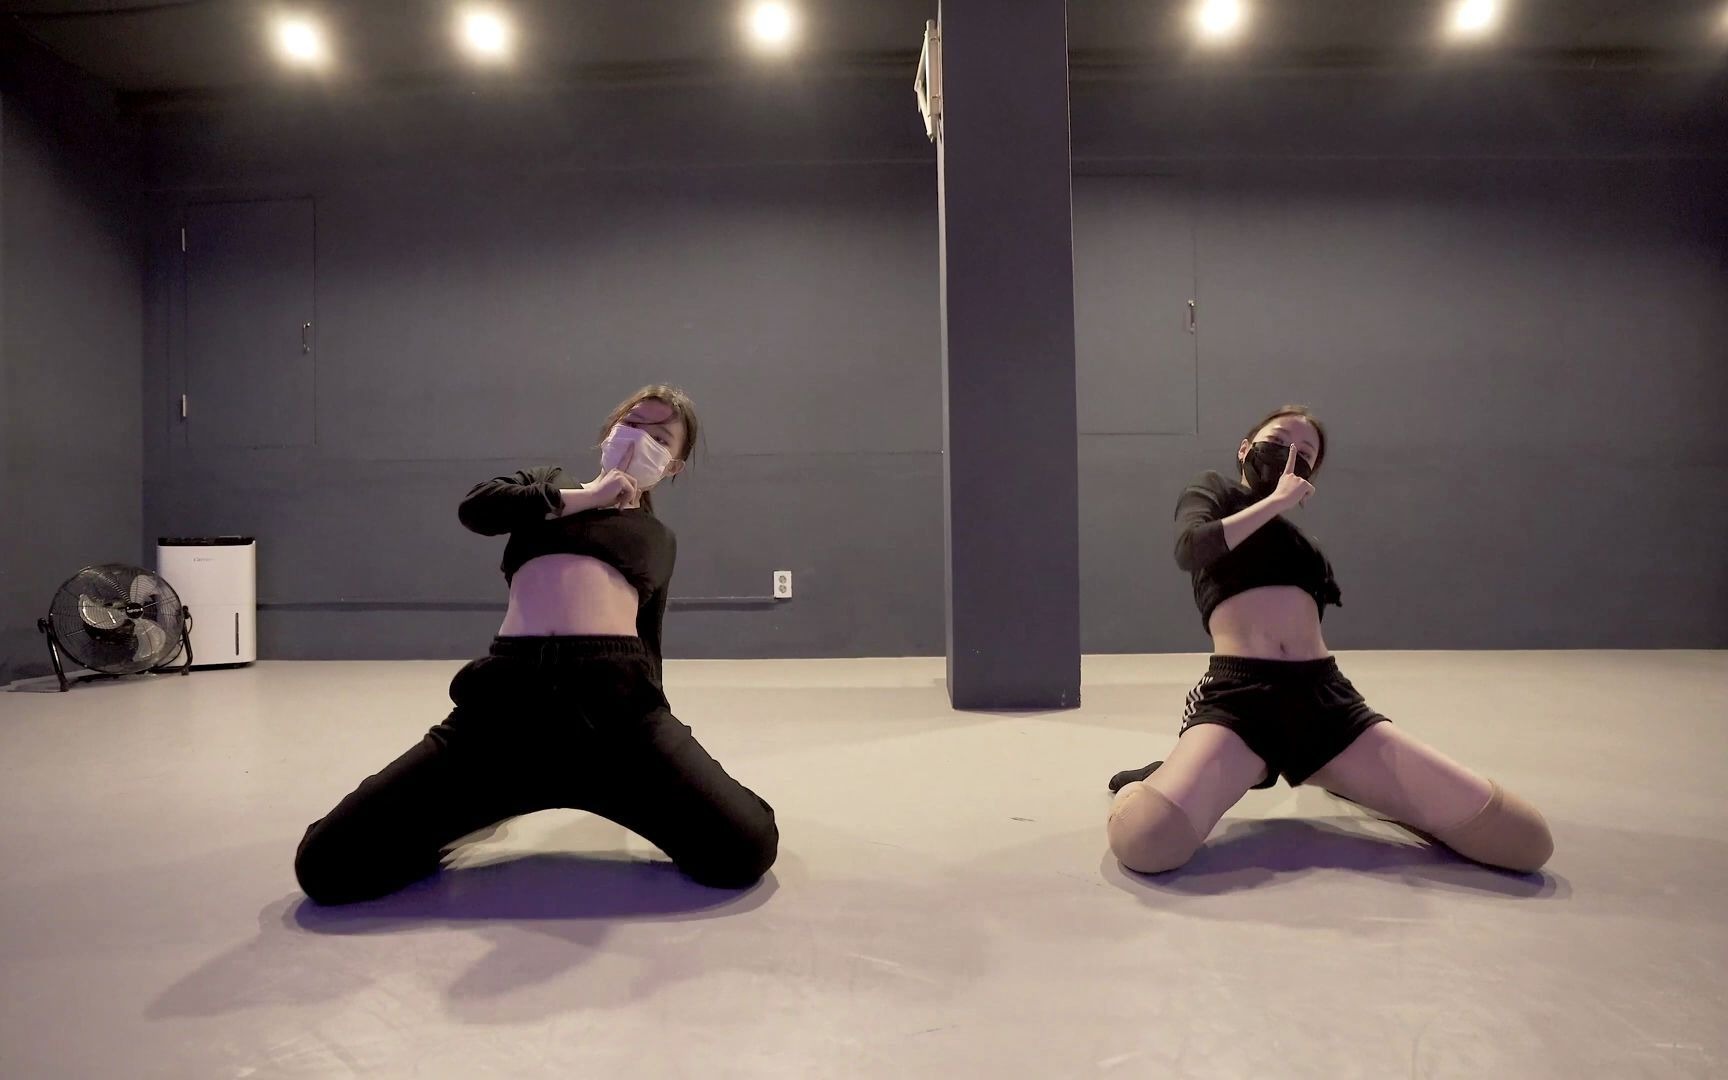 【身体柔韧的一批】性感妹子JAMIE超强控制爵士舞“SHE SAID”- CRUSH   | Urban Play Dance